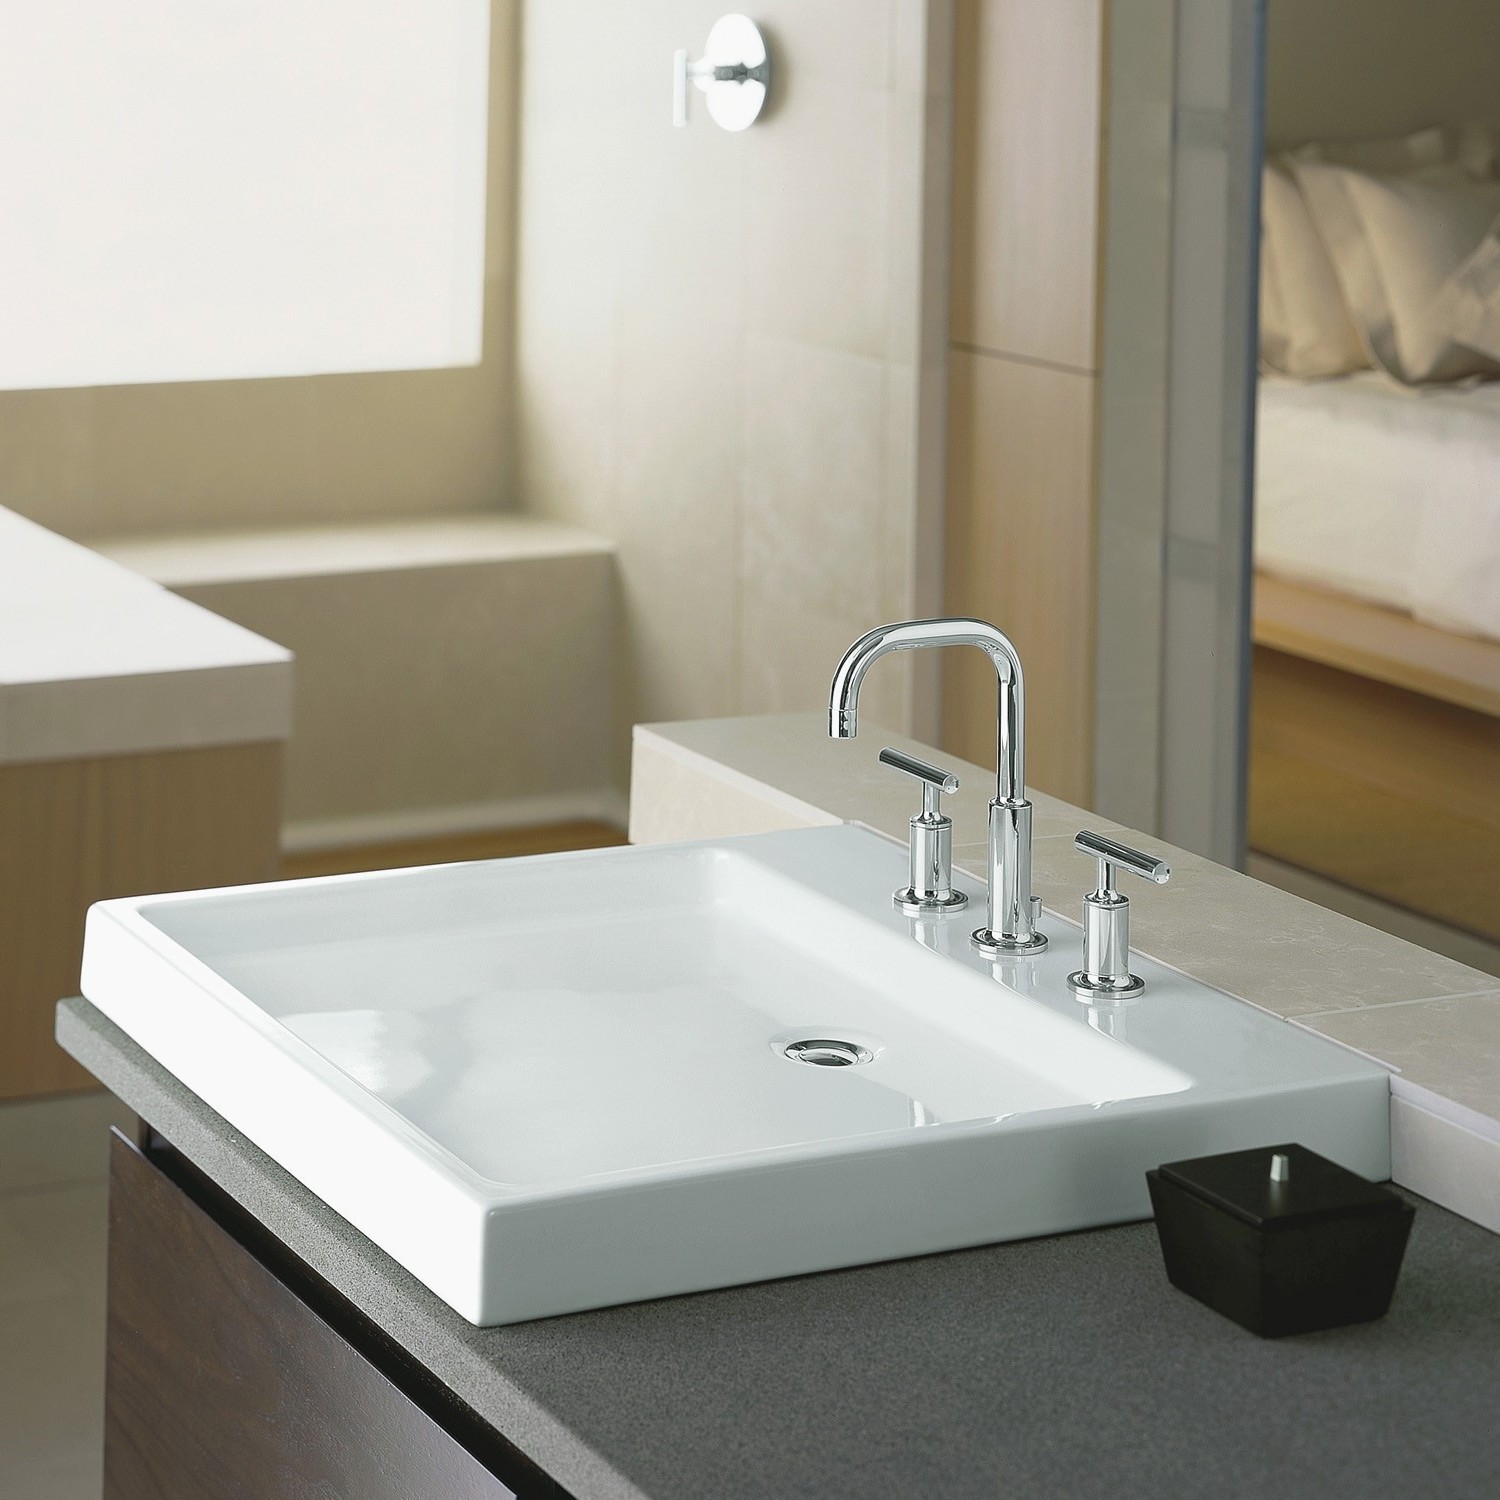 Kohler Vanities Vessel Sinks Awesome Aaa 1800x800h Sink Kohler Bathroom Sinks Buying Guidei 0d